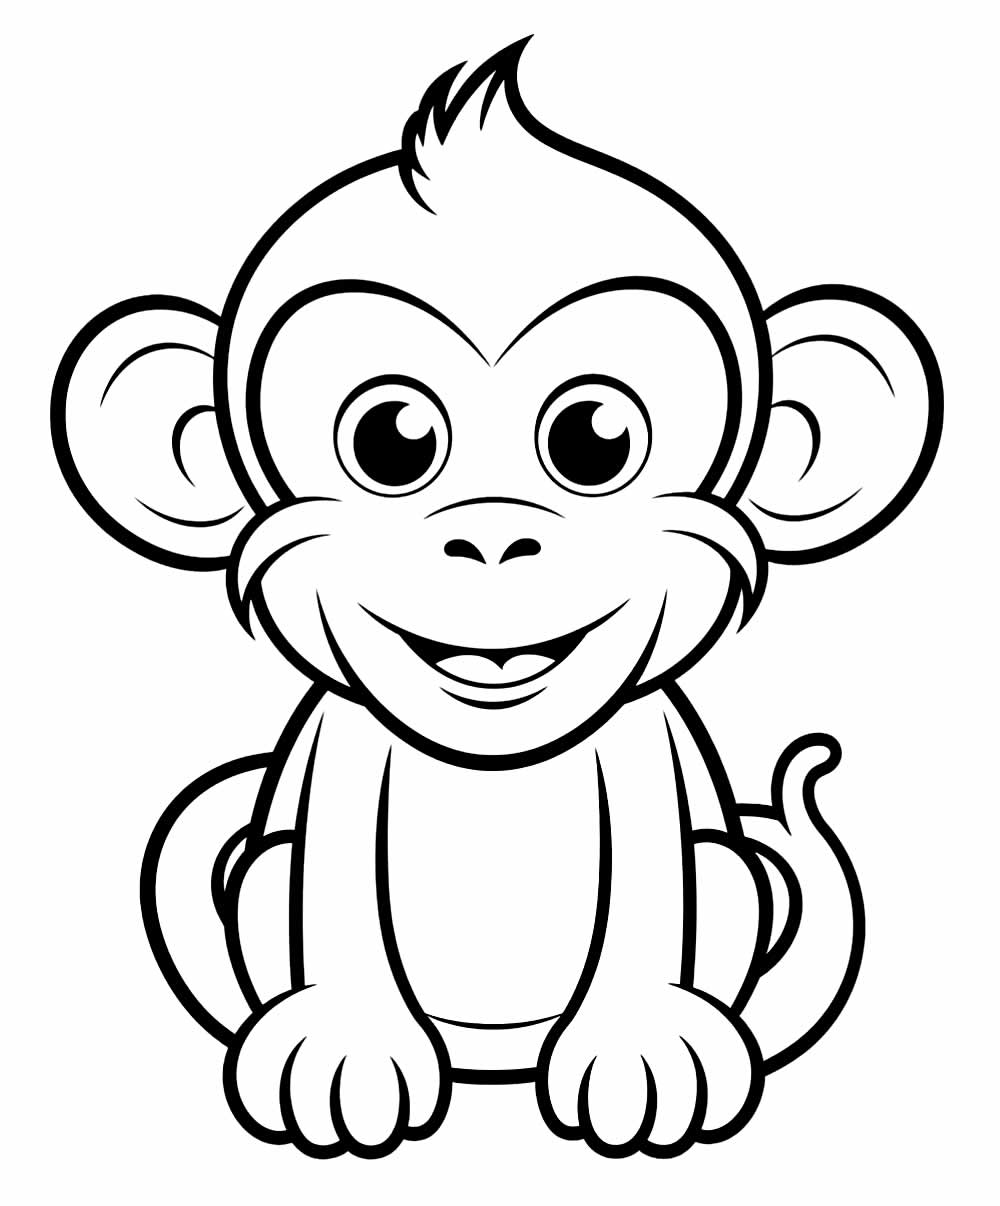 Desenho e Imagem Motocicleta Macaco para Colorir e Imprimir Grátis para  Adultos e Crianças 